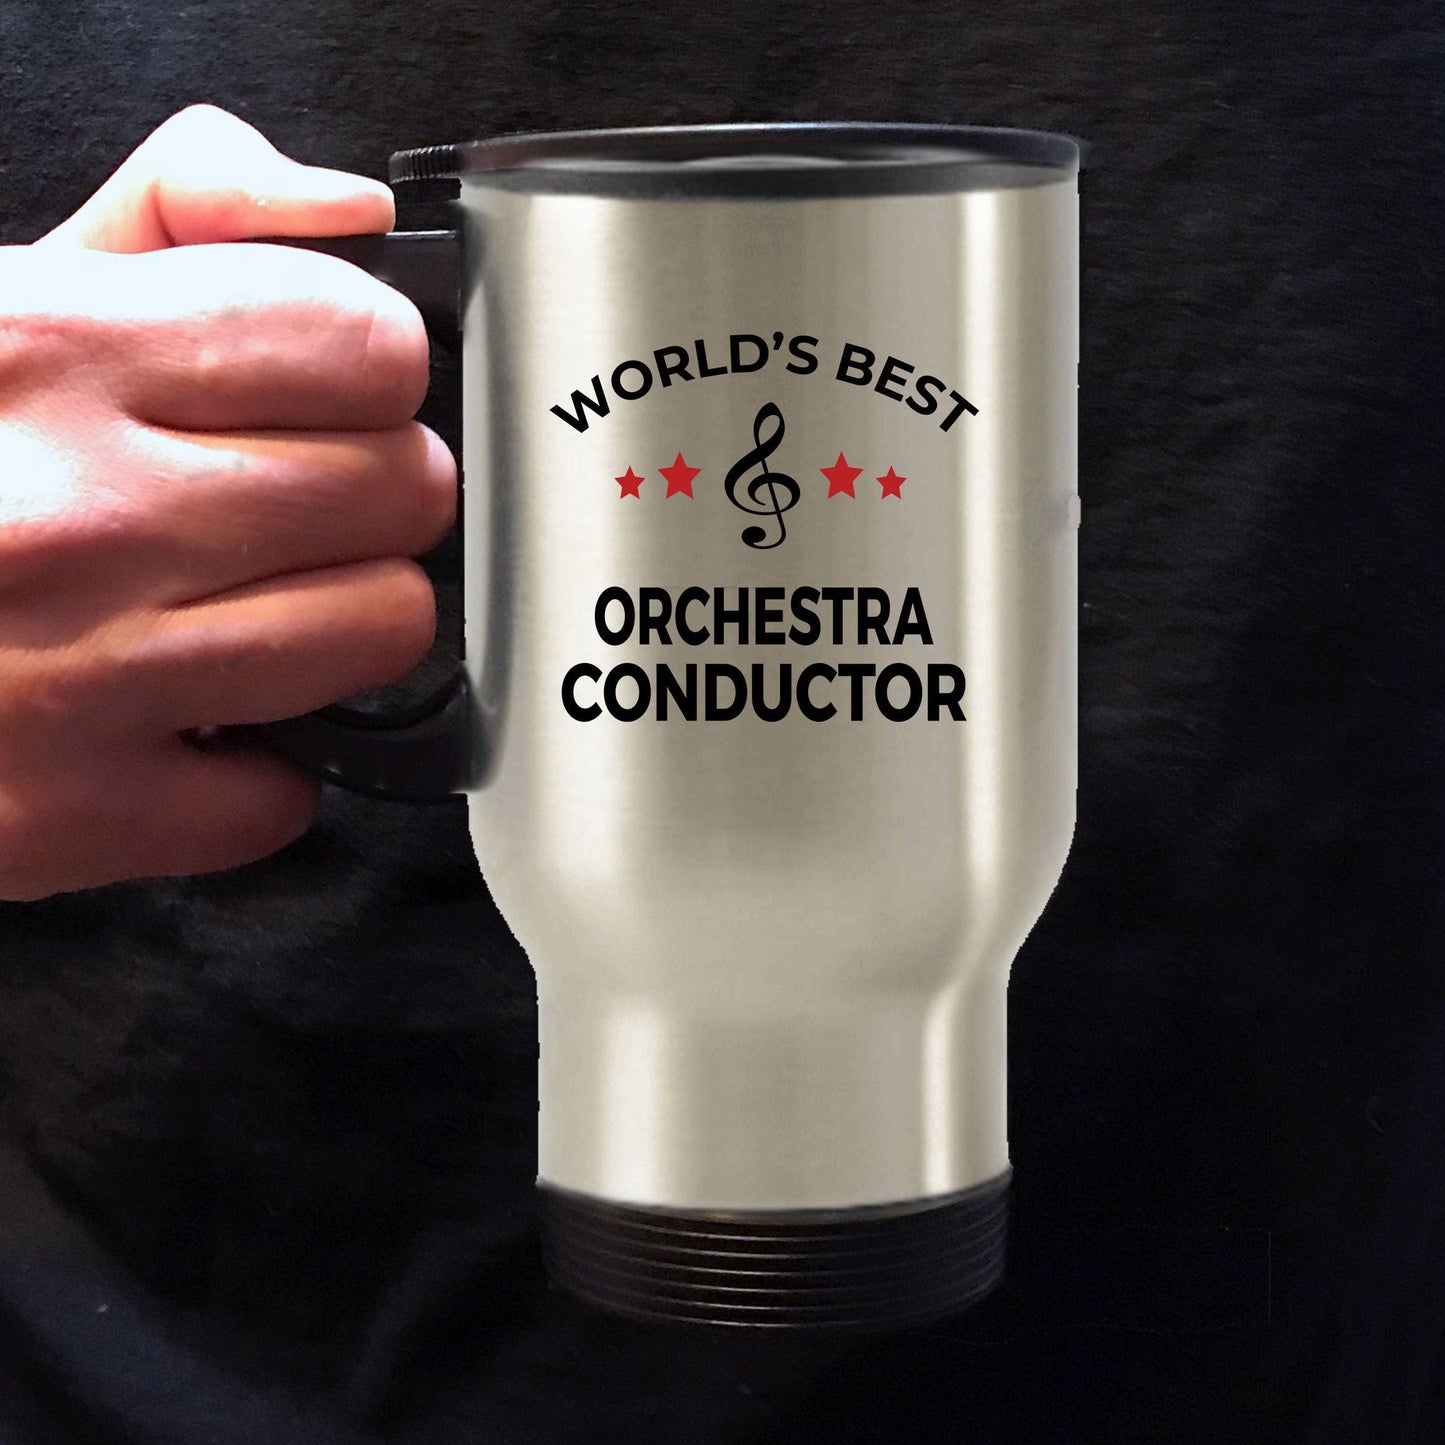 Orchestra Conductor Travel Mug